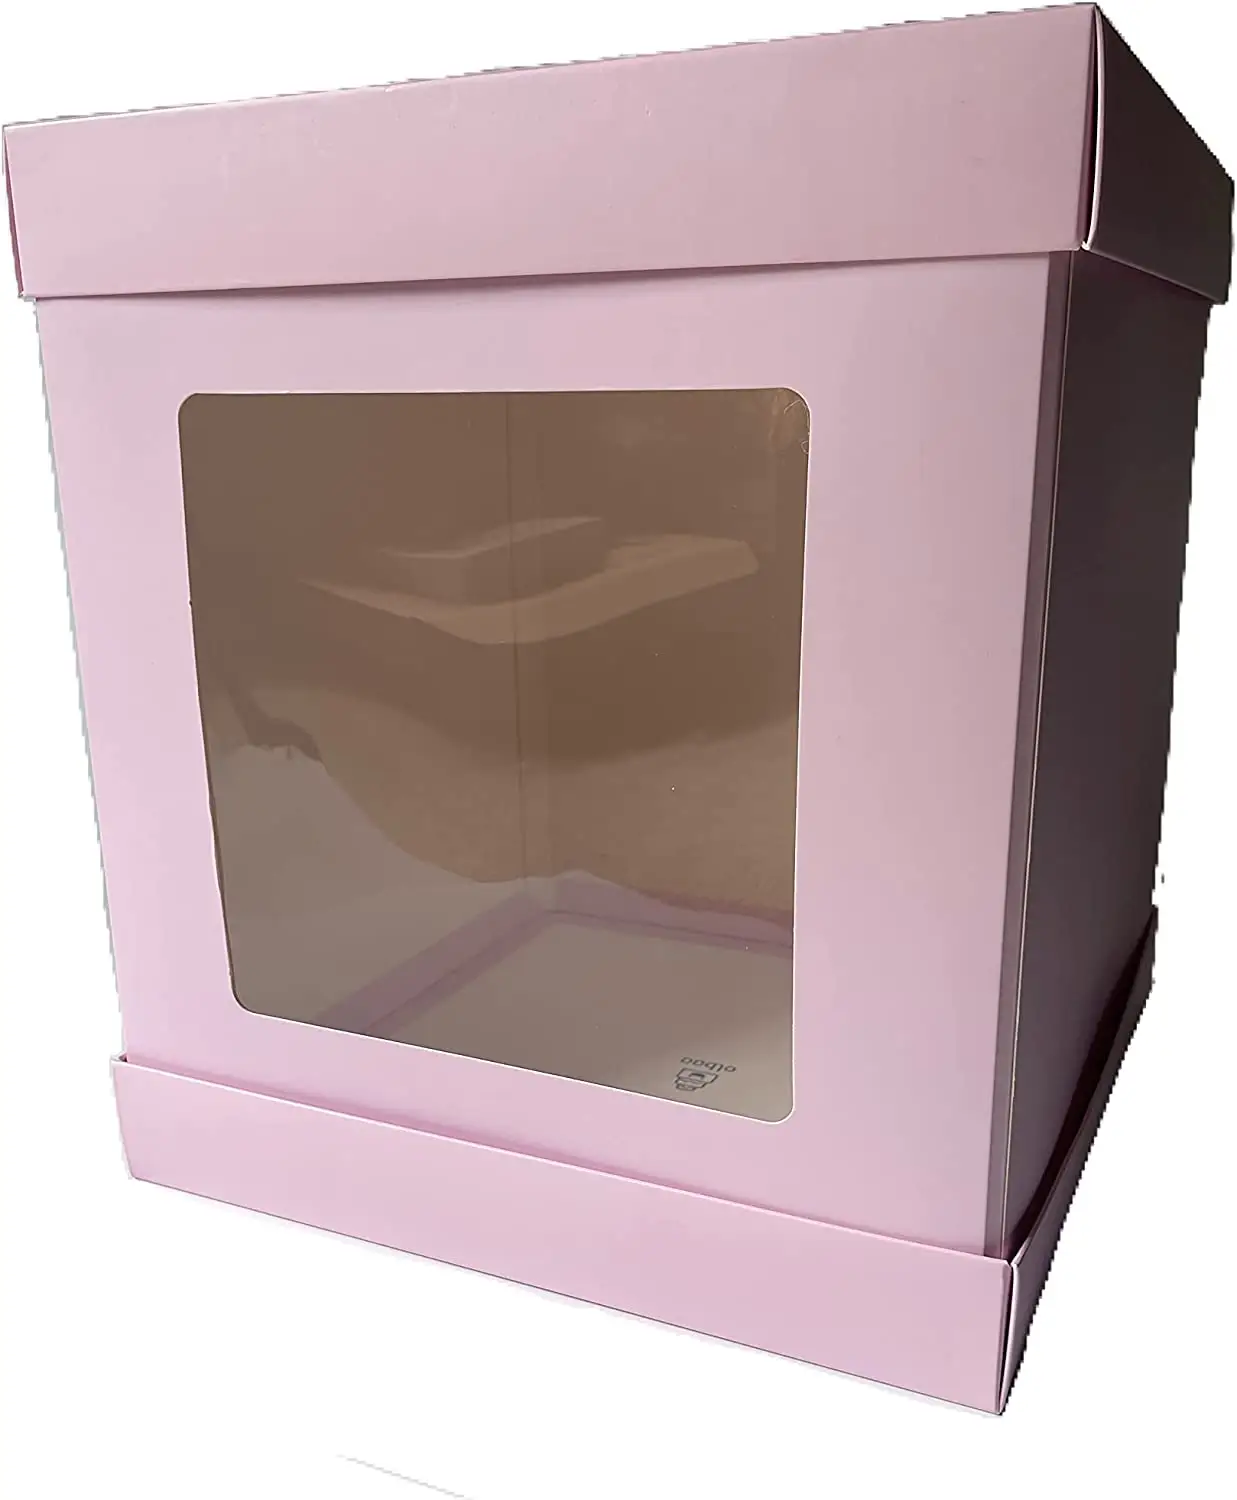 Venta al por mayor personalizada Rosa 10x10x12 "caja de pastel blanco liso panadería pastelería cajas de embalaje a granel leche caja de pastel alto